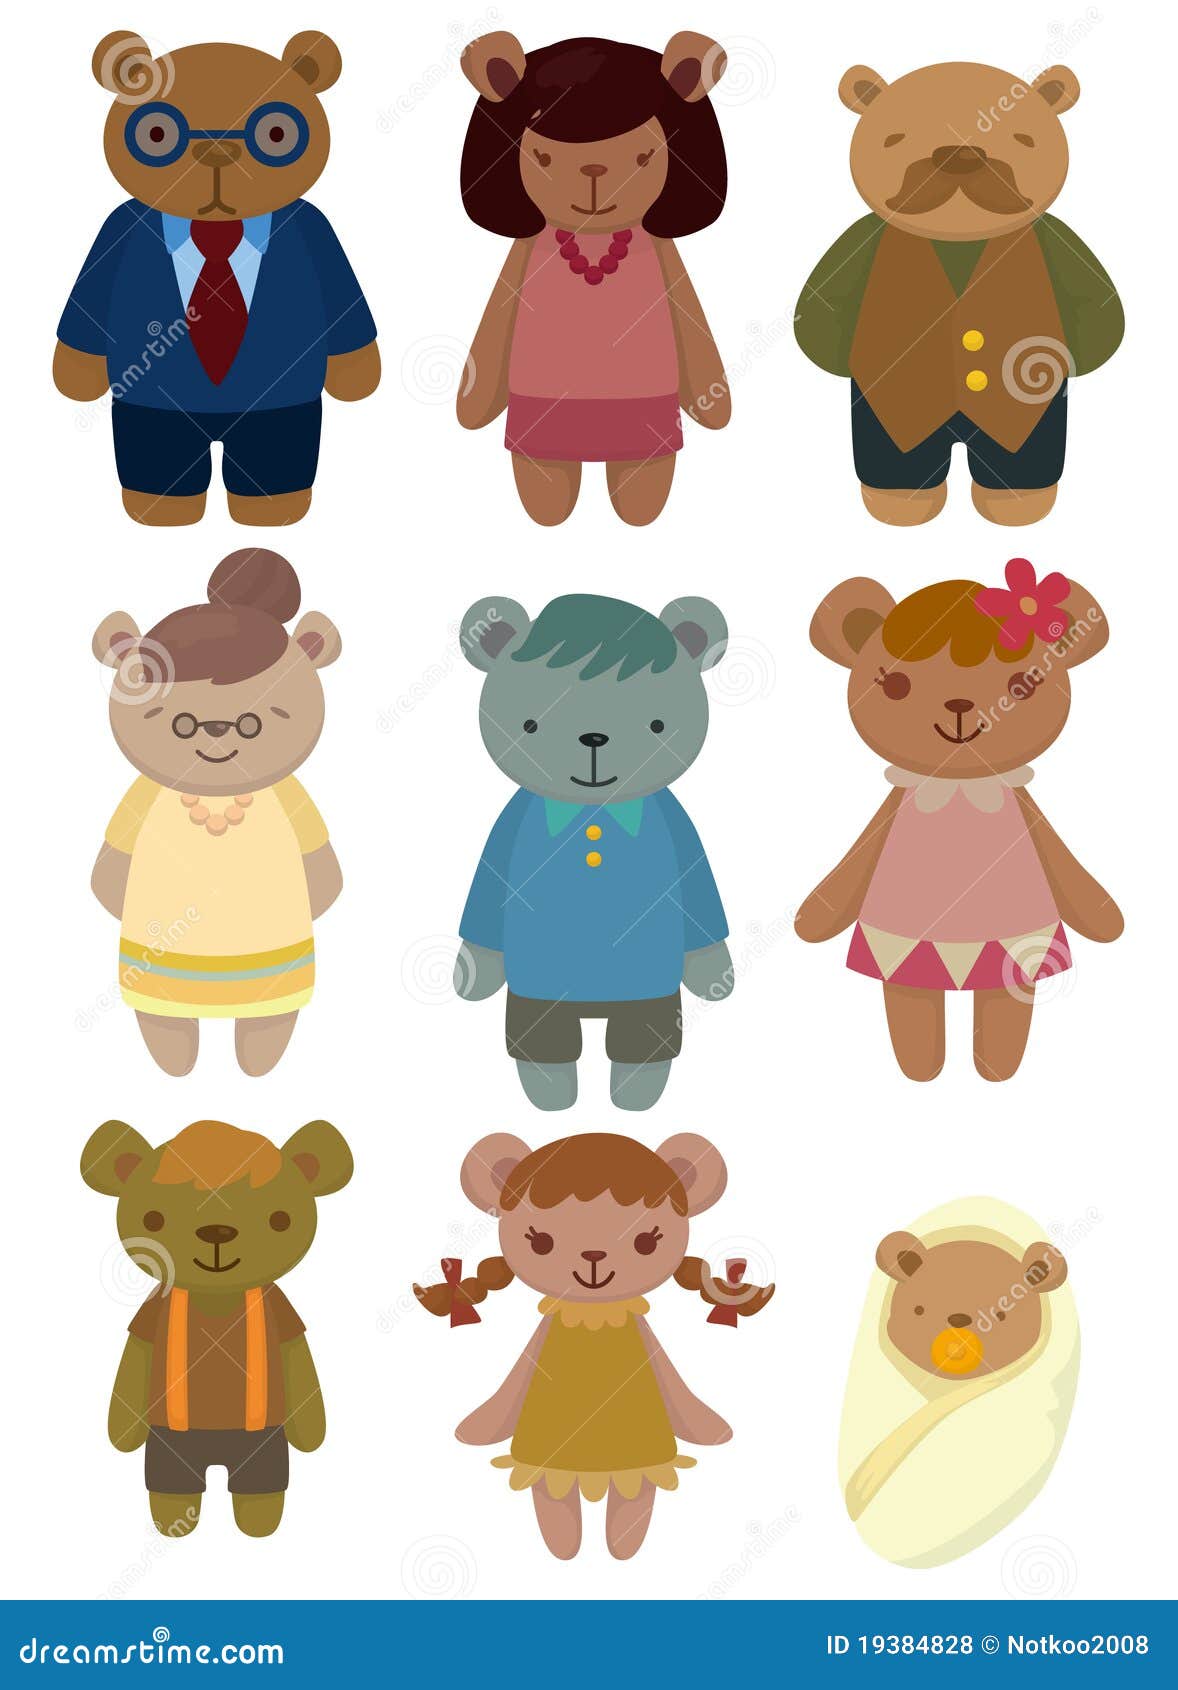 photos libres de droits graphisme réglé de famille d ours de dessin animé image